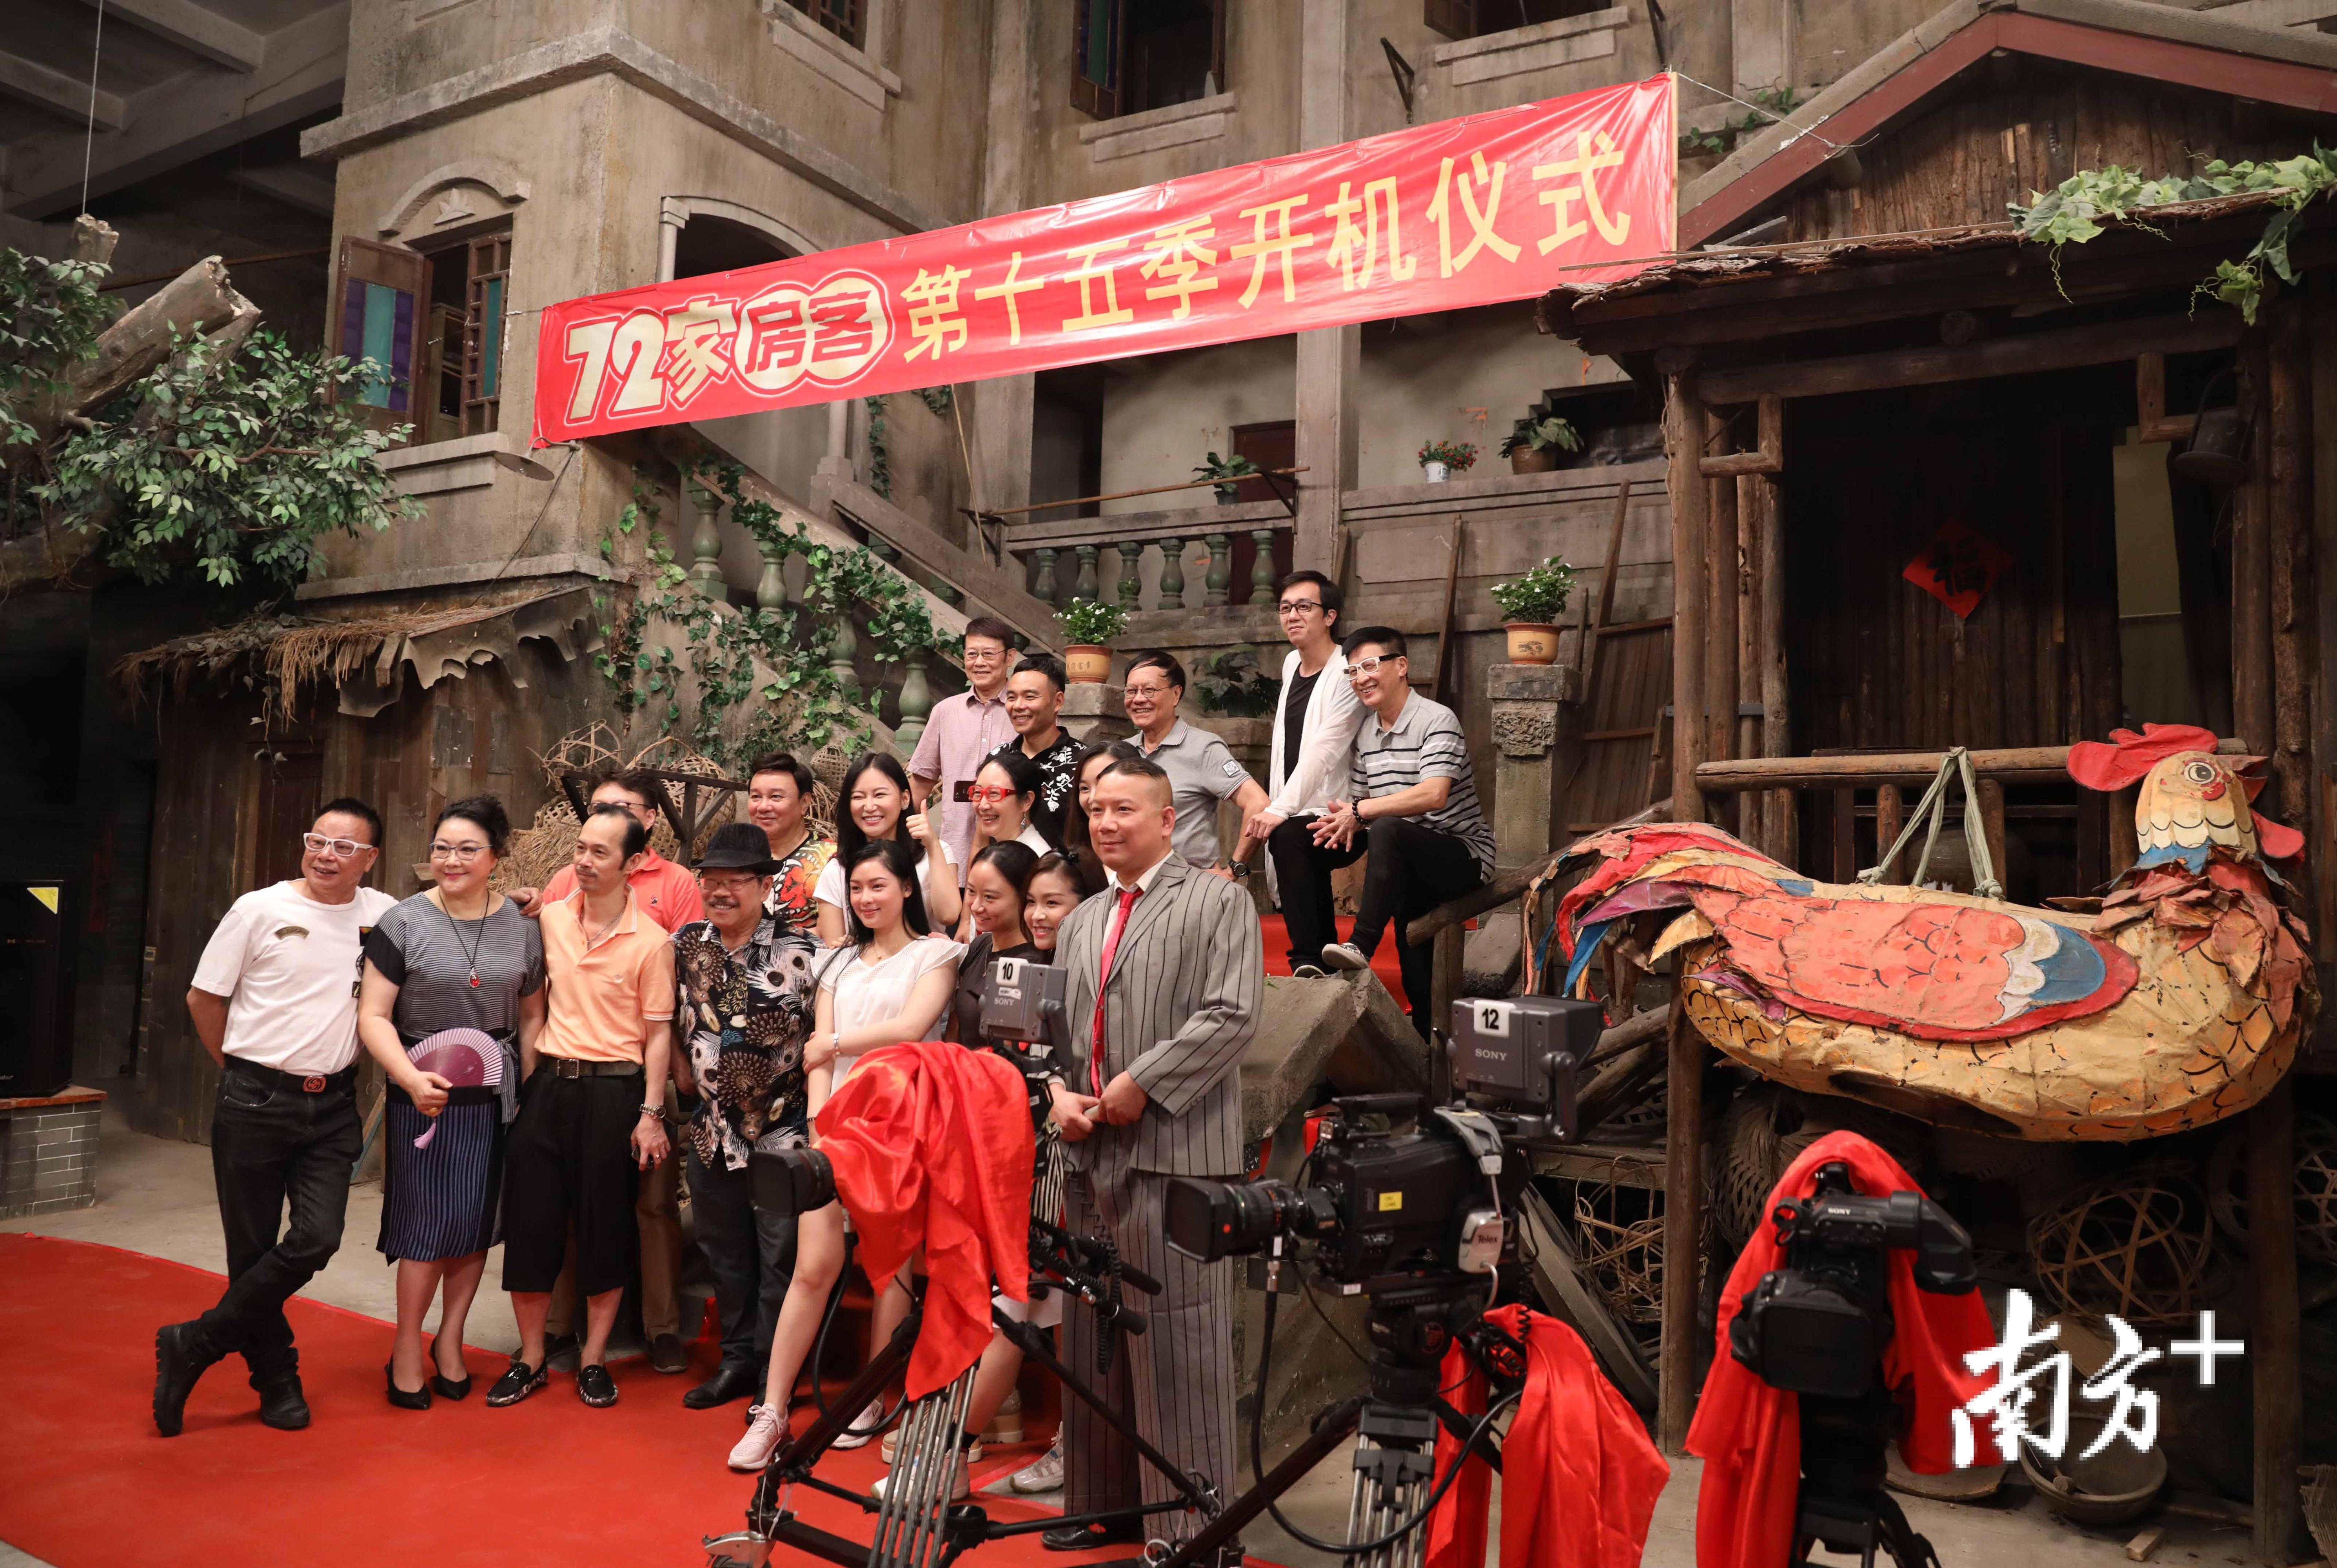 和珠江电影集团联合出品的大型电视系列情景剧《七十二家房客》第15季